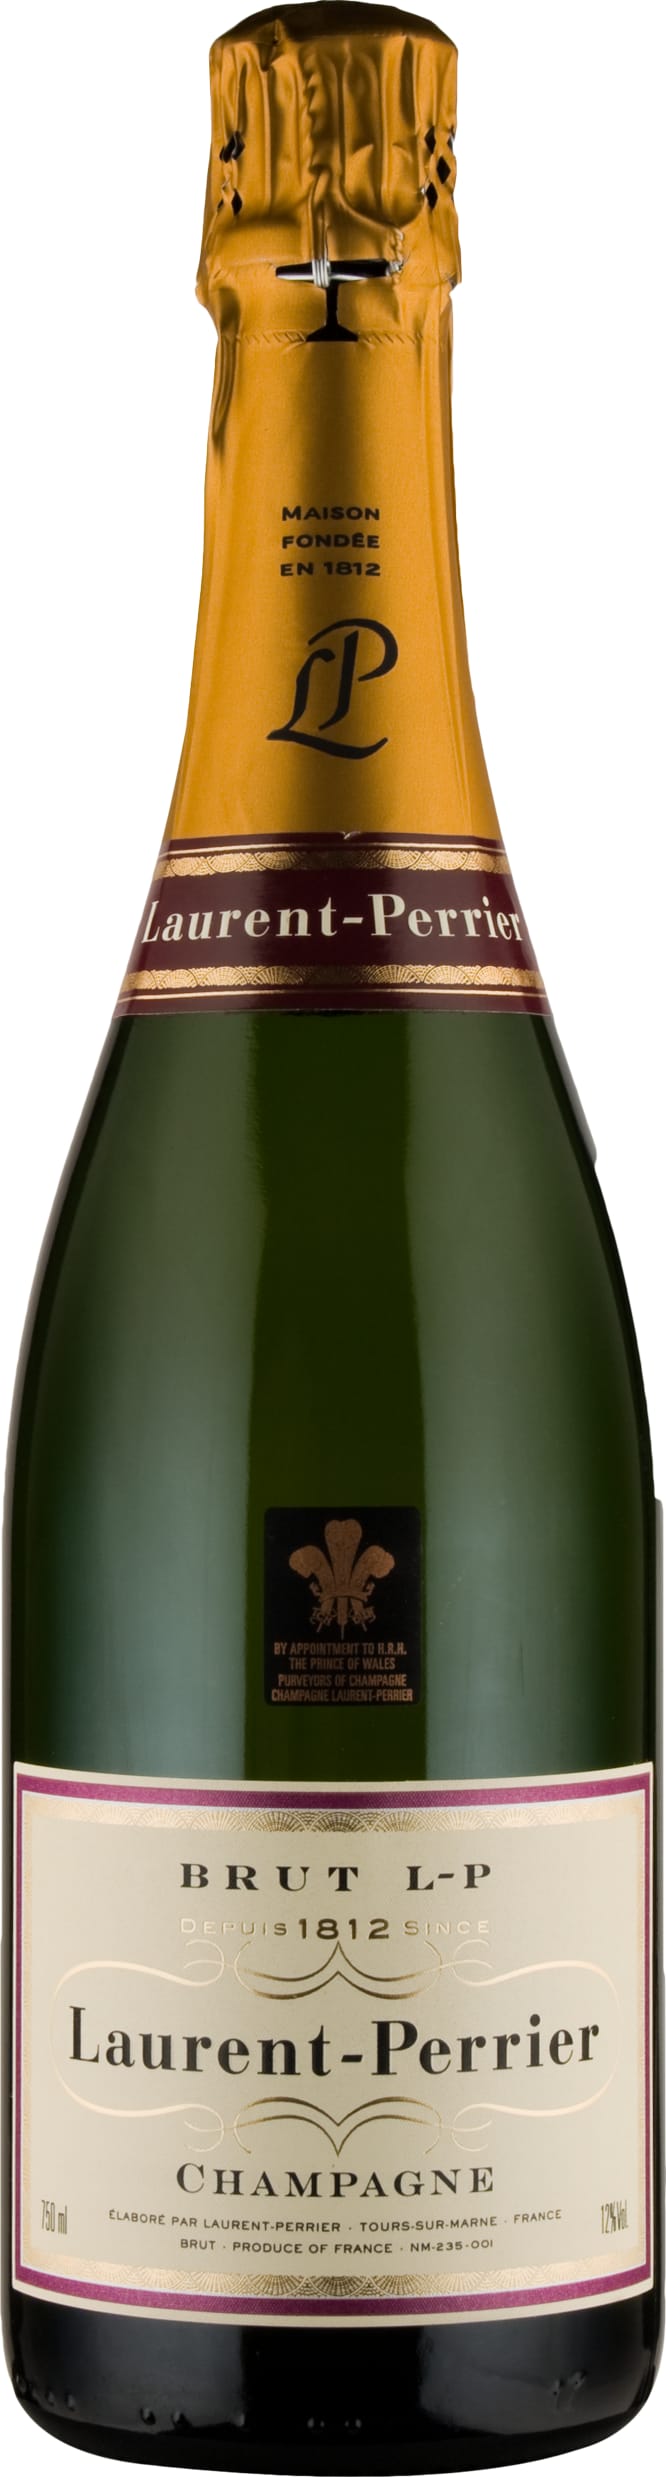 Laurent Perrier La Cuvee Half 37.5cl NV - Buy Laurent Perrier Wines from GREAT WINES DIRECT wine shop